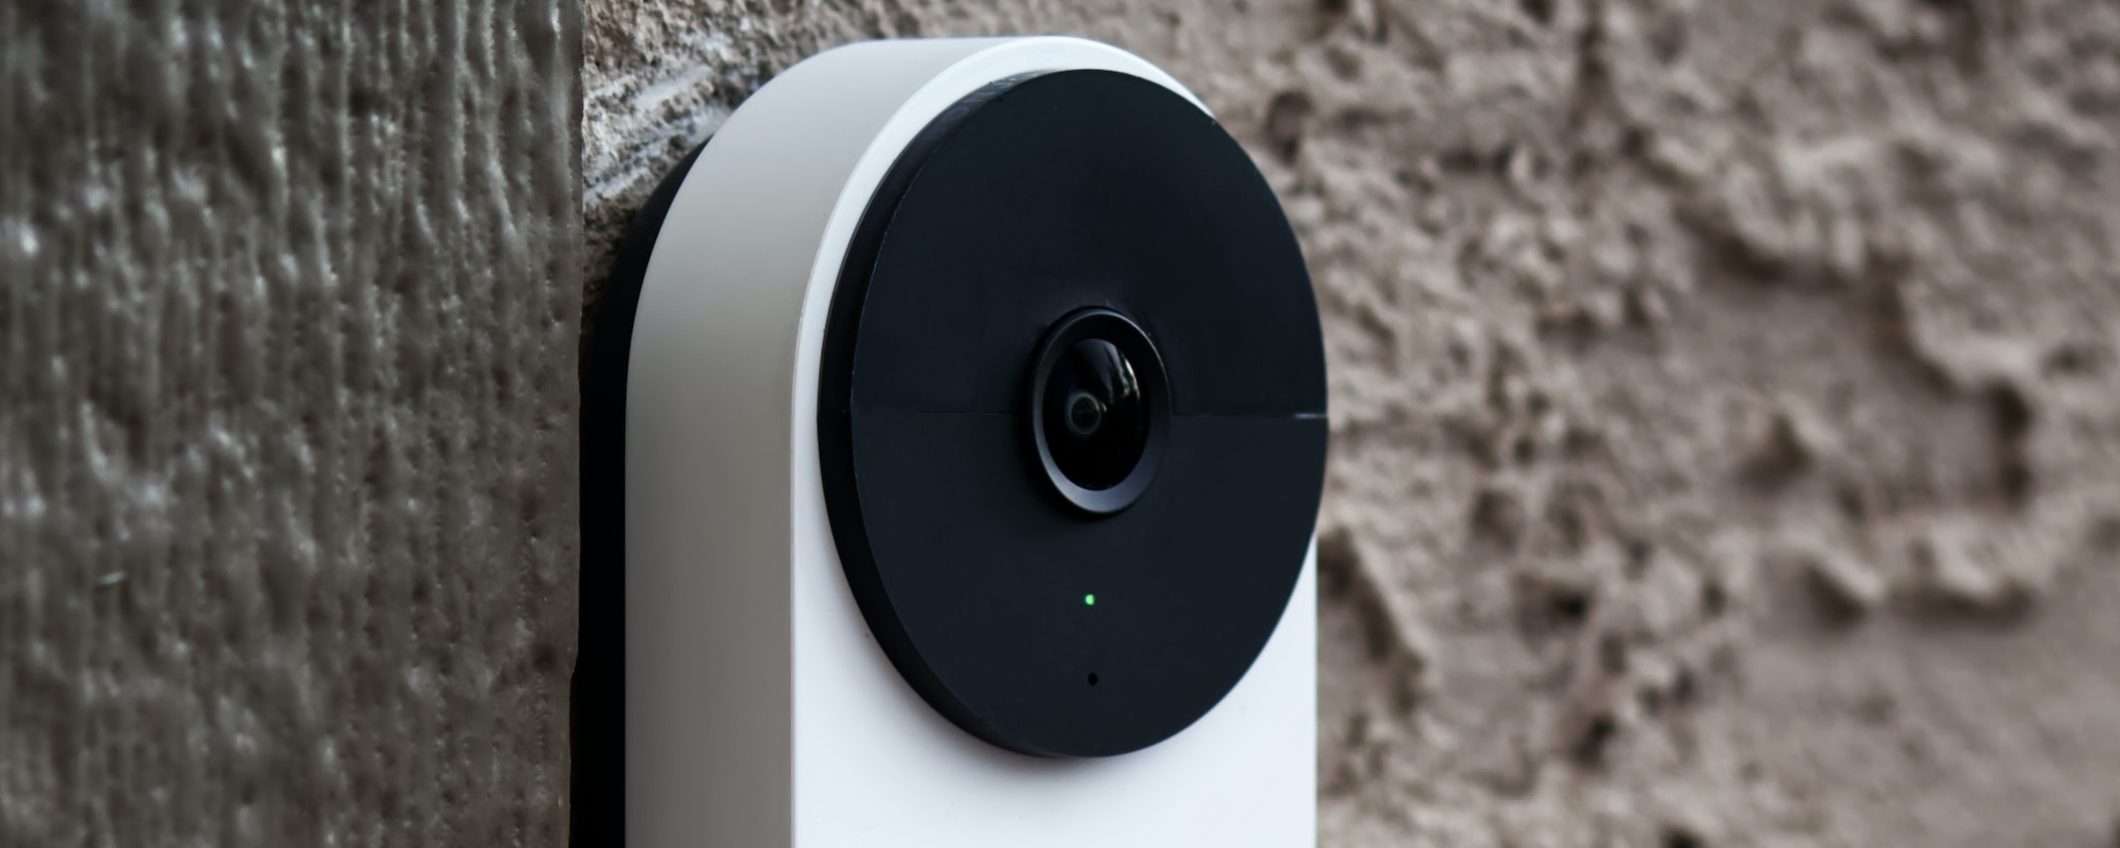 Google Nest Cam e Doorbell soffrono il freddo